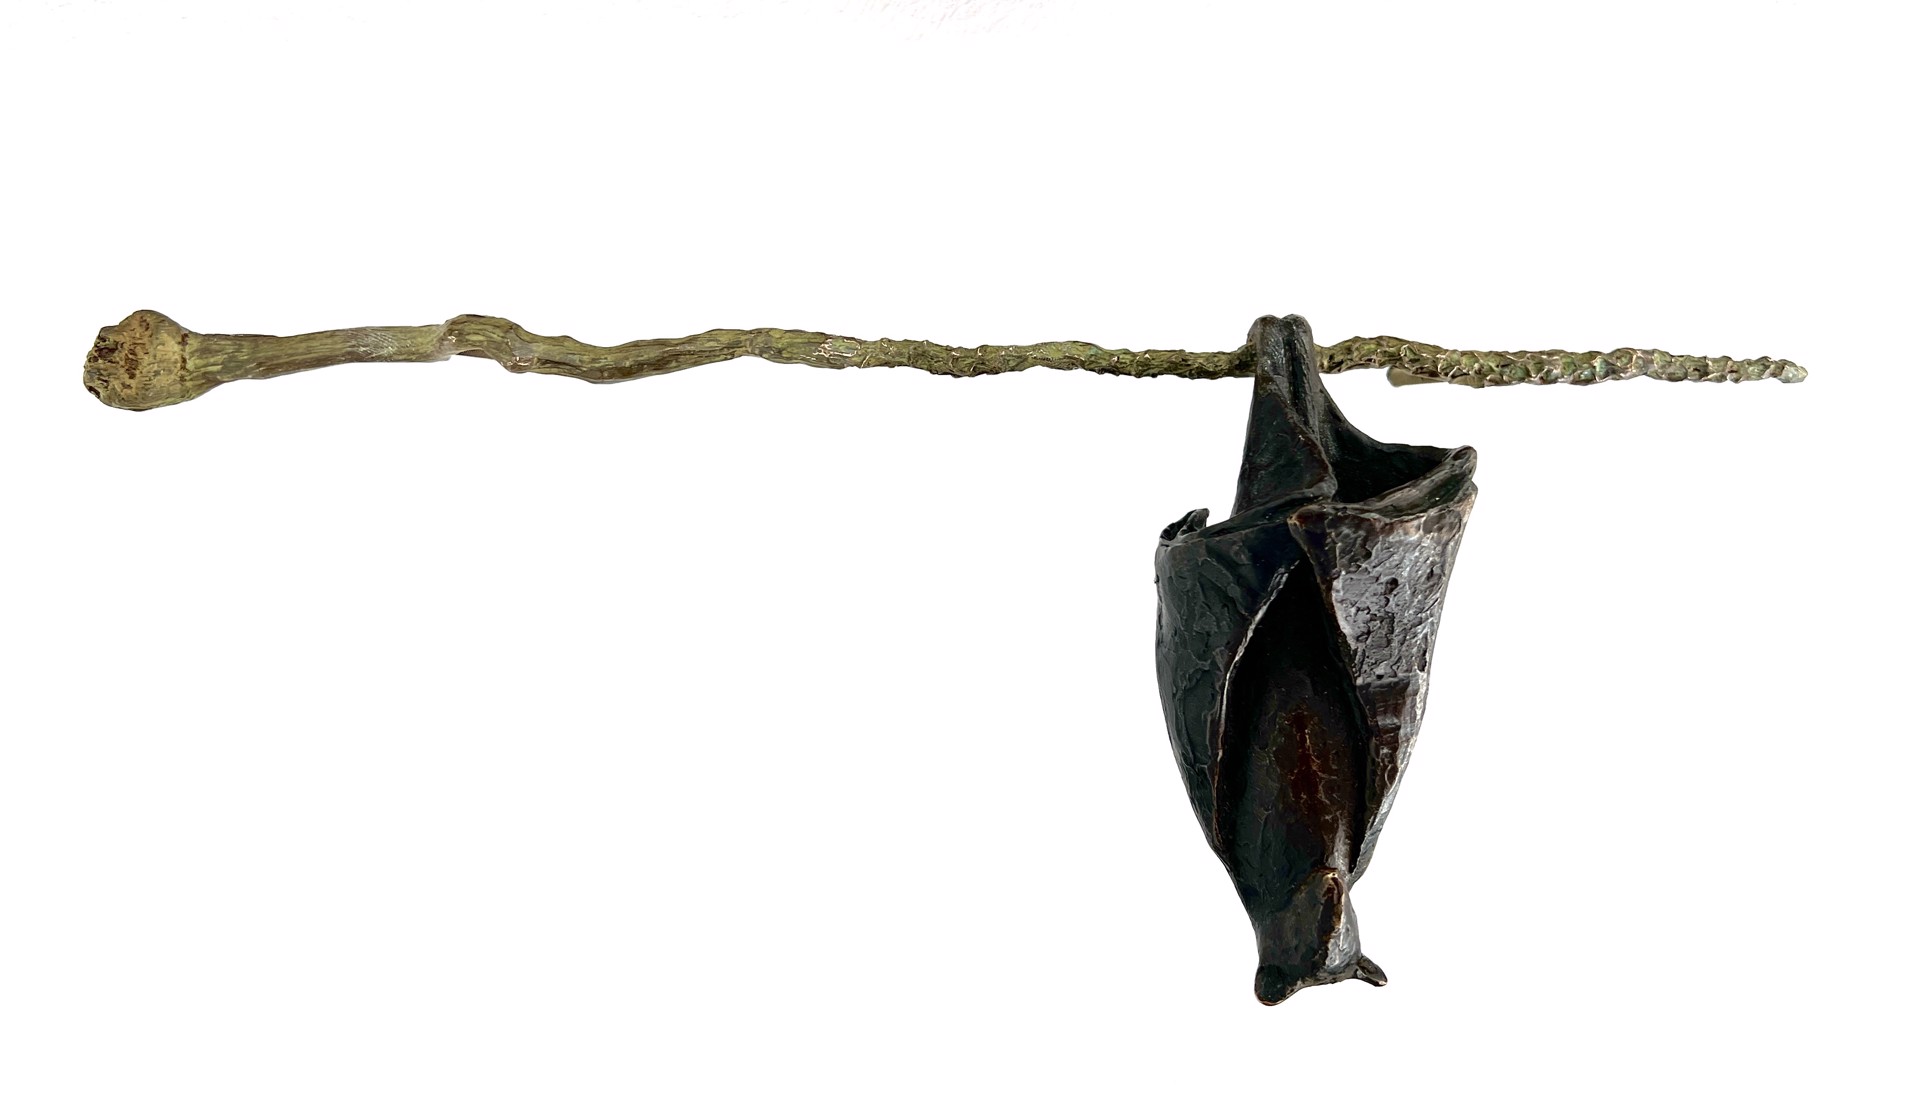 Bronze Bat on Branch by Copper Tritscheller